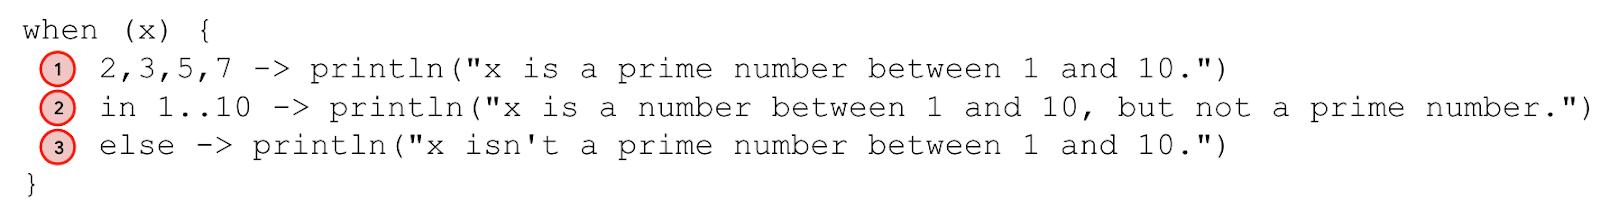 Sơ đồ chú thích câu lệnh when. Dòng 2,3,5,7 -> println("x là số nguyên tố từ 1 đến 10.") được chú thích là trường hợp 1. Dòng in 1..10 -> println("x là số từ 1 đến 10, nhưng không phải là số nguyên tố") được chú thích là trường hợp 2. Dòng else -> println("x không phải là số nguyên tố từ 1 và 10.") được chú thích là trường hợp 3. 